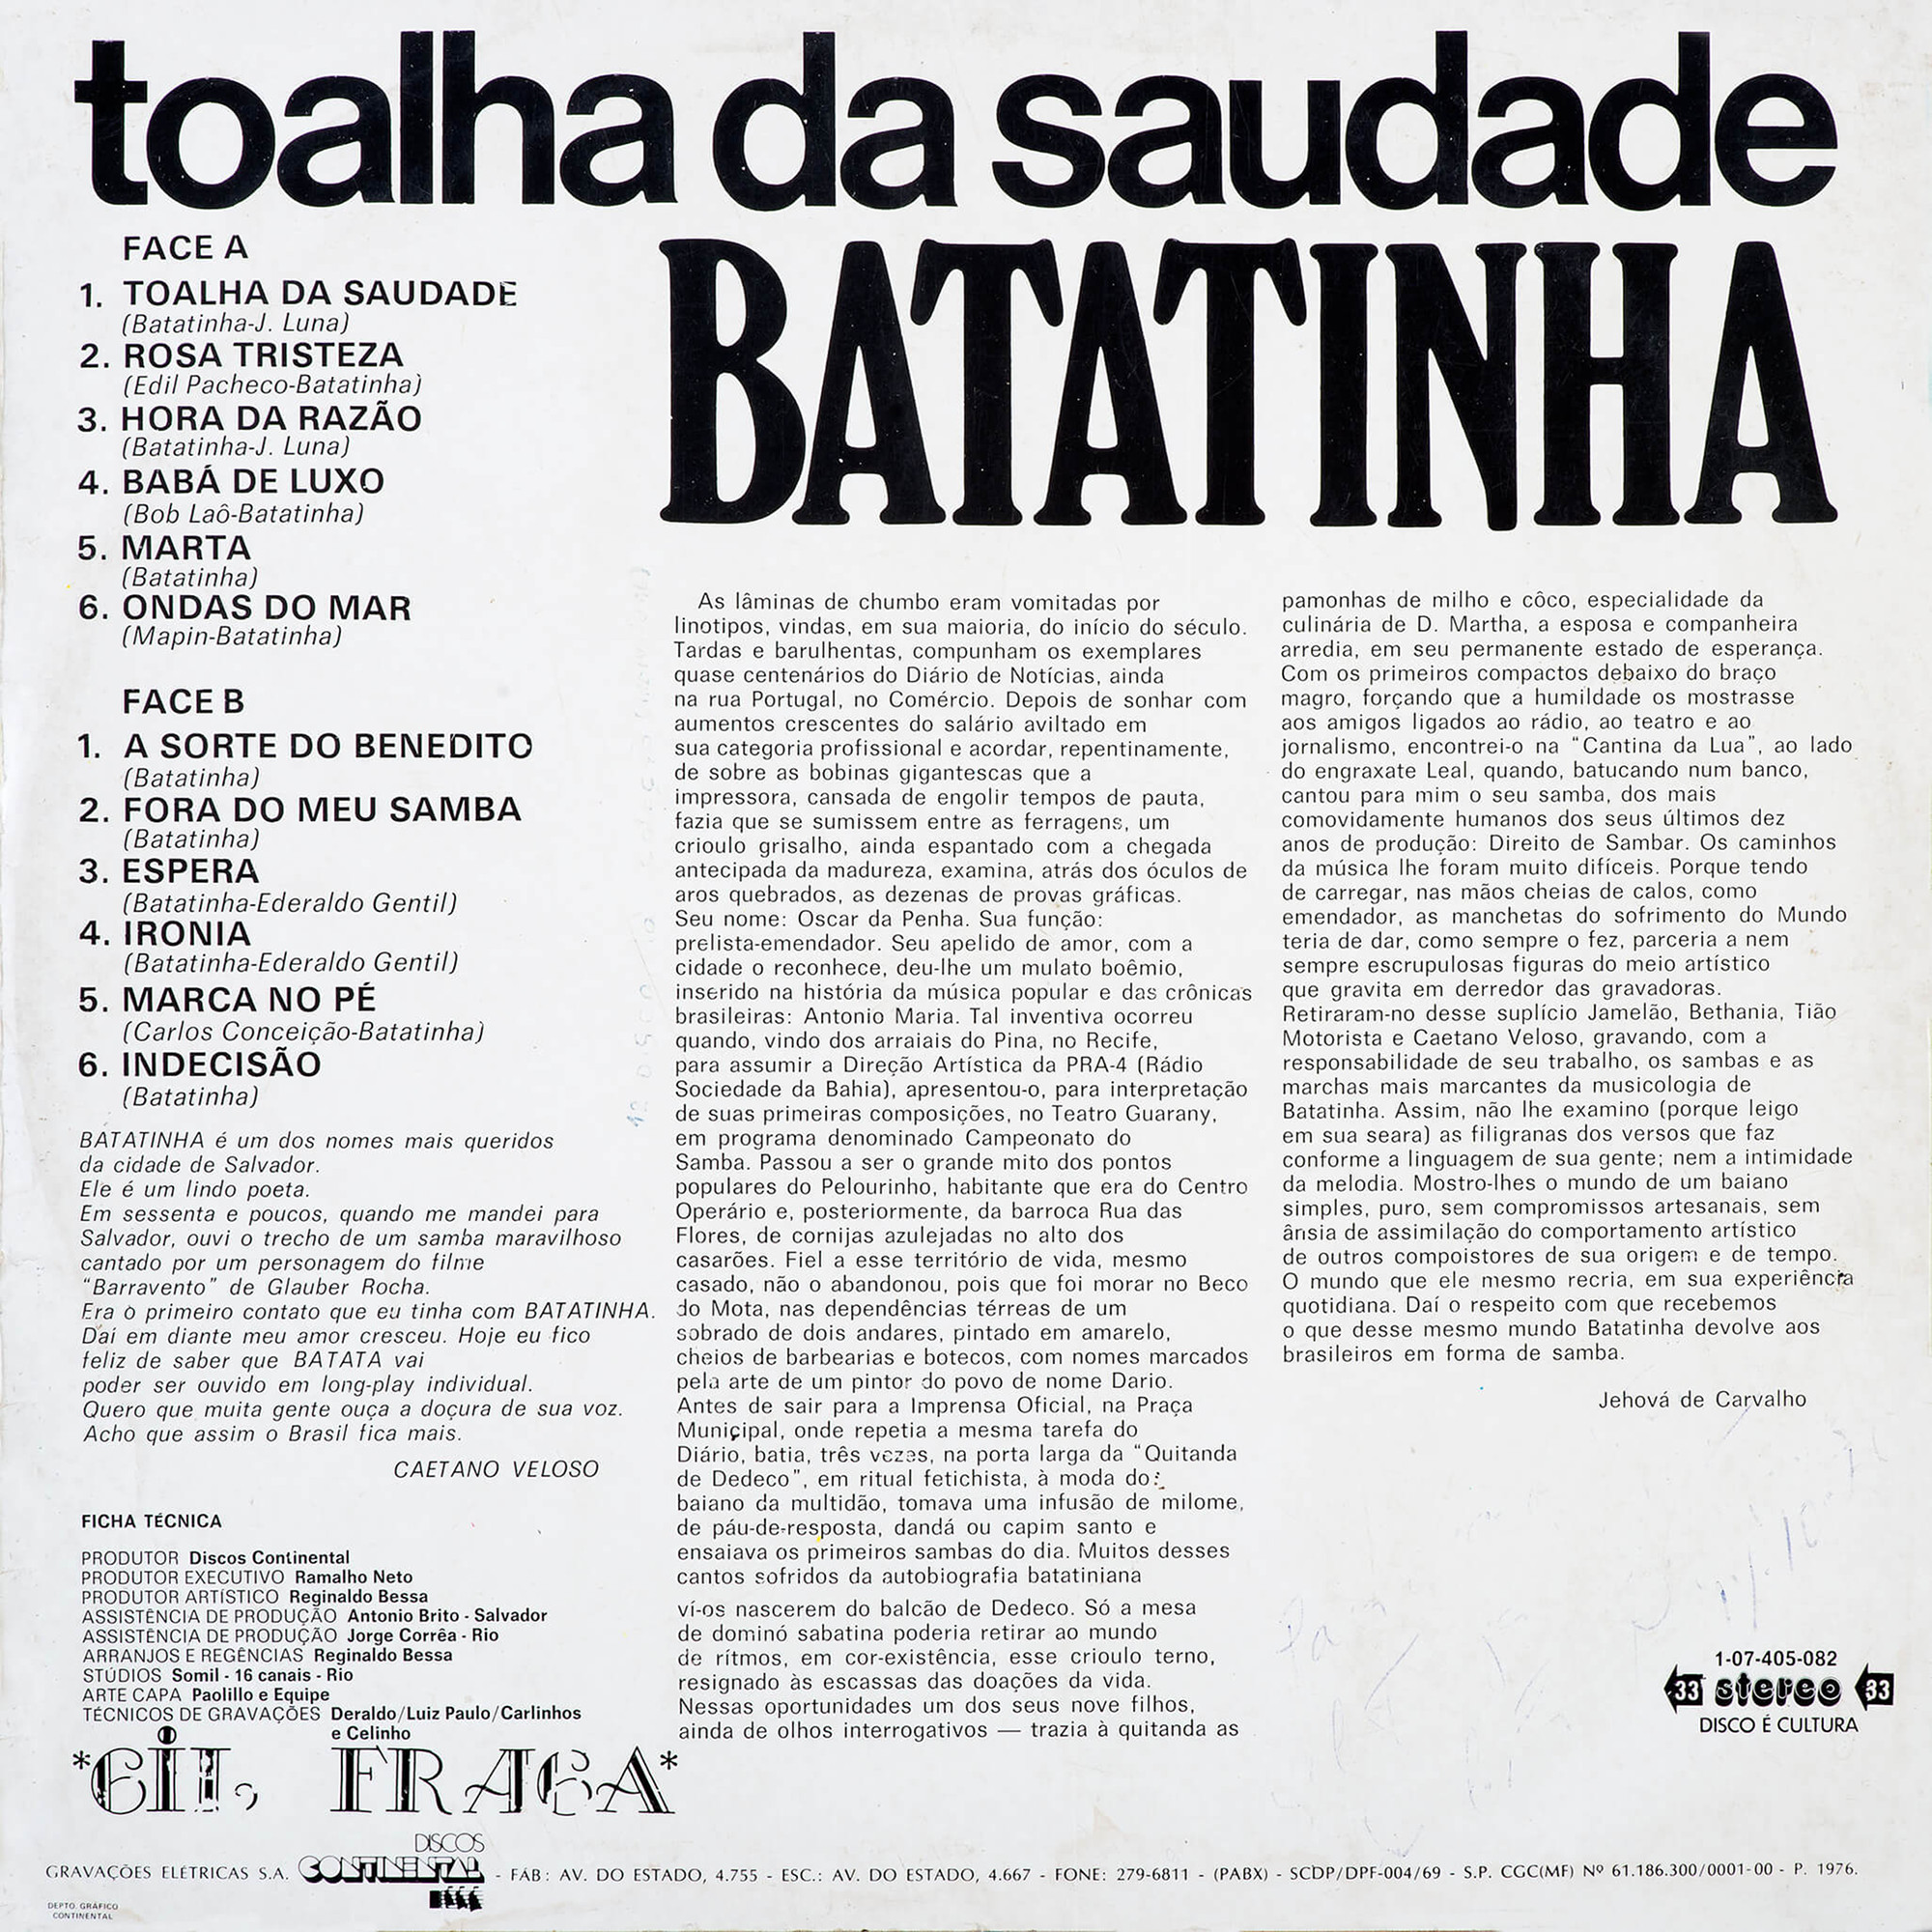 Composição de Ederaldo Gentil e Batatinha gravada por Batatinha no disco “Toalha da saudade” (1976).